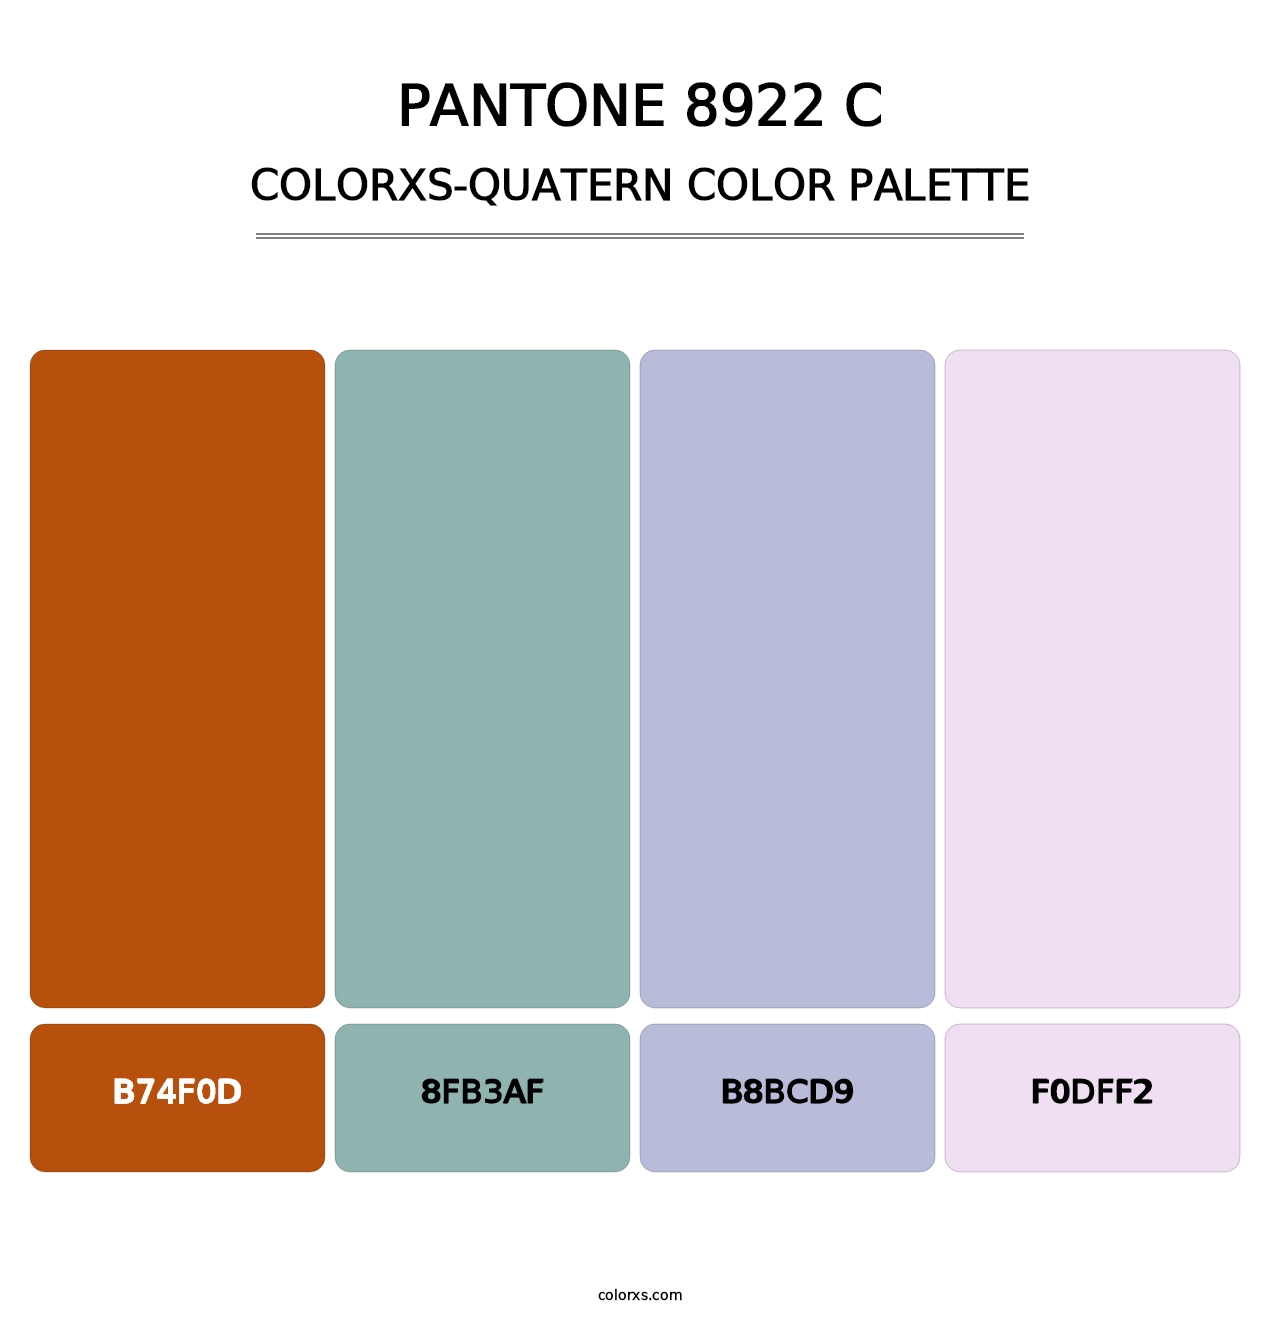 PANTONE 8922 C - Colorxs Quatern Palette